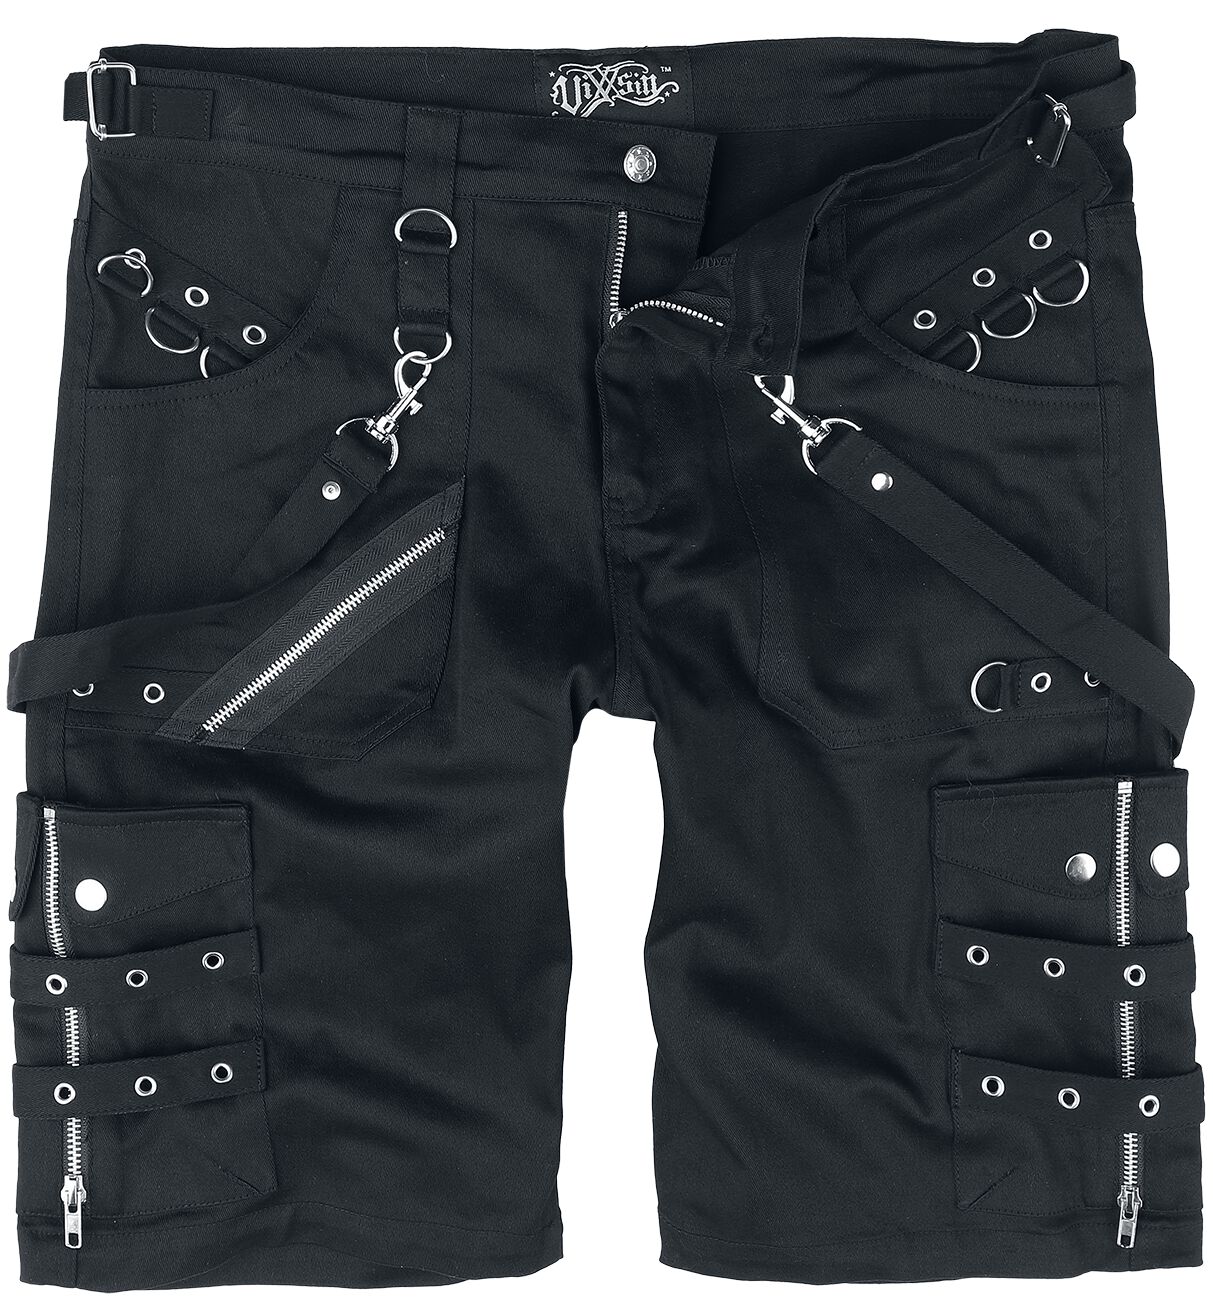 Vixxsin - Gothic Short - Edham Shorts - 30 bis 38 - für Männer - Größe 34 - schwarz